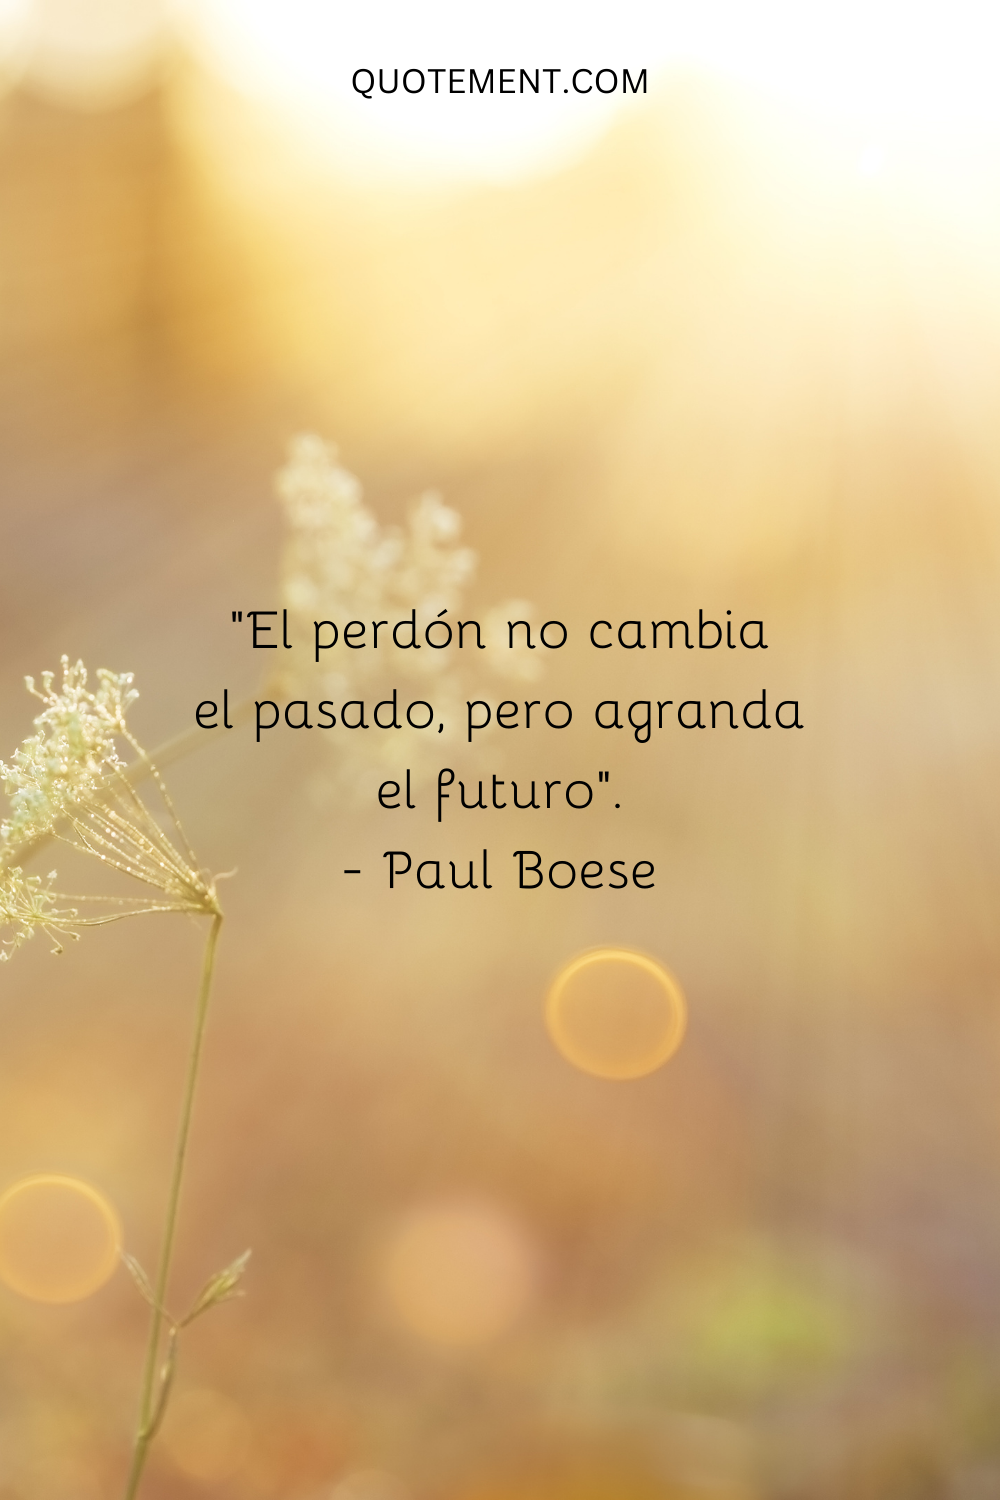 "El perdón no cambia el pasado, pero agranda el futuro". - Paul Boese